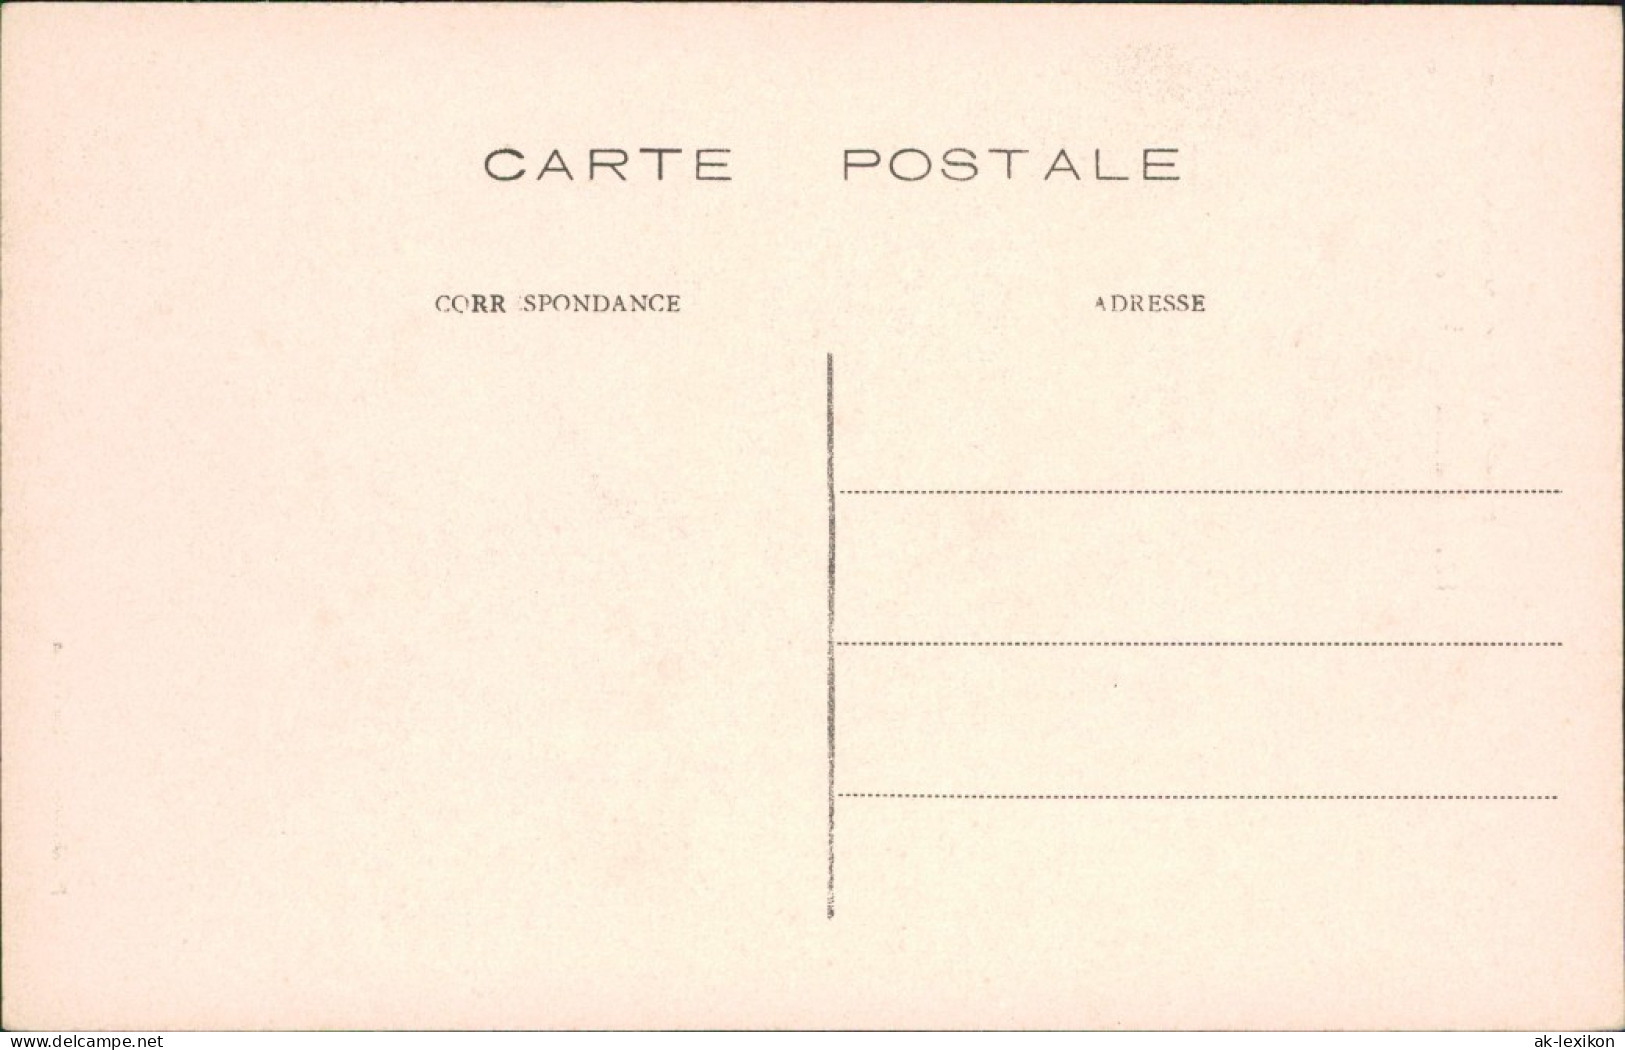 Postkaart Brüssel Bruxelles Palais De La Ville Liege - EXPO 1910  - Autres & Non Classés